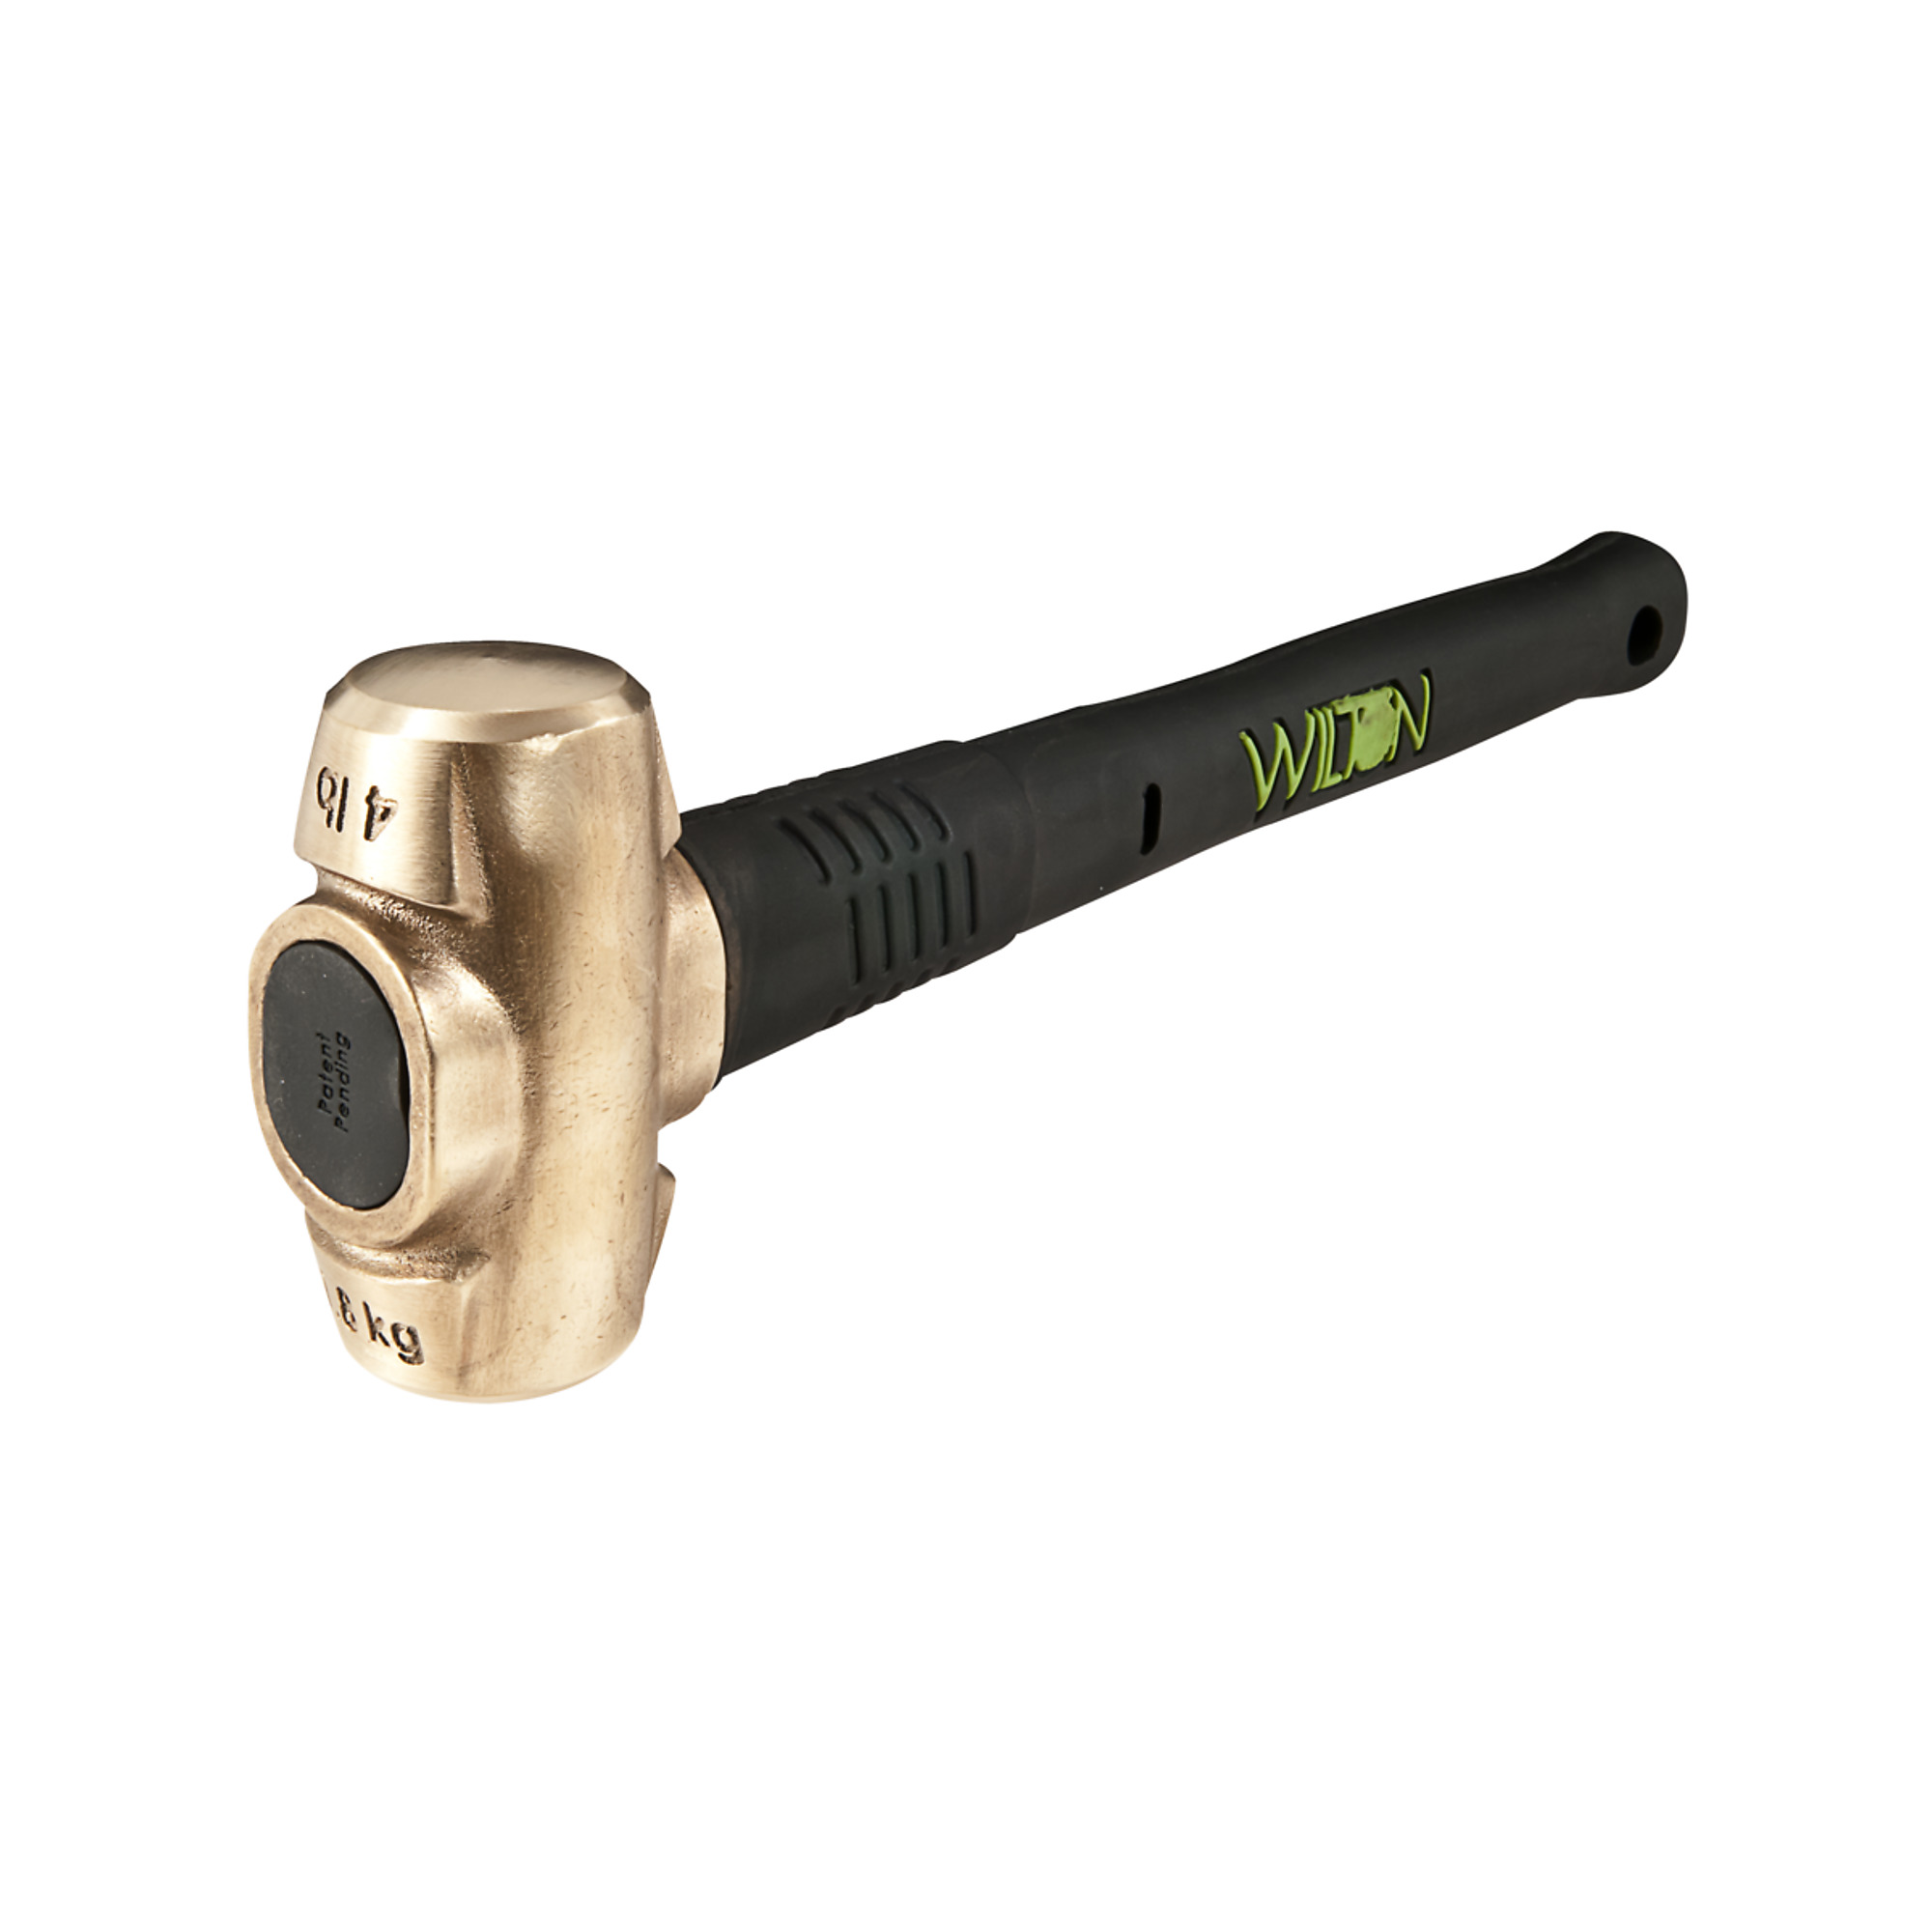 Wilton, Brass Sledgehammer, Handle Length 16 in, Model 90416